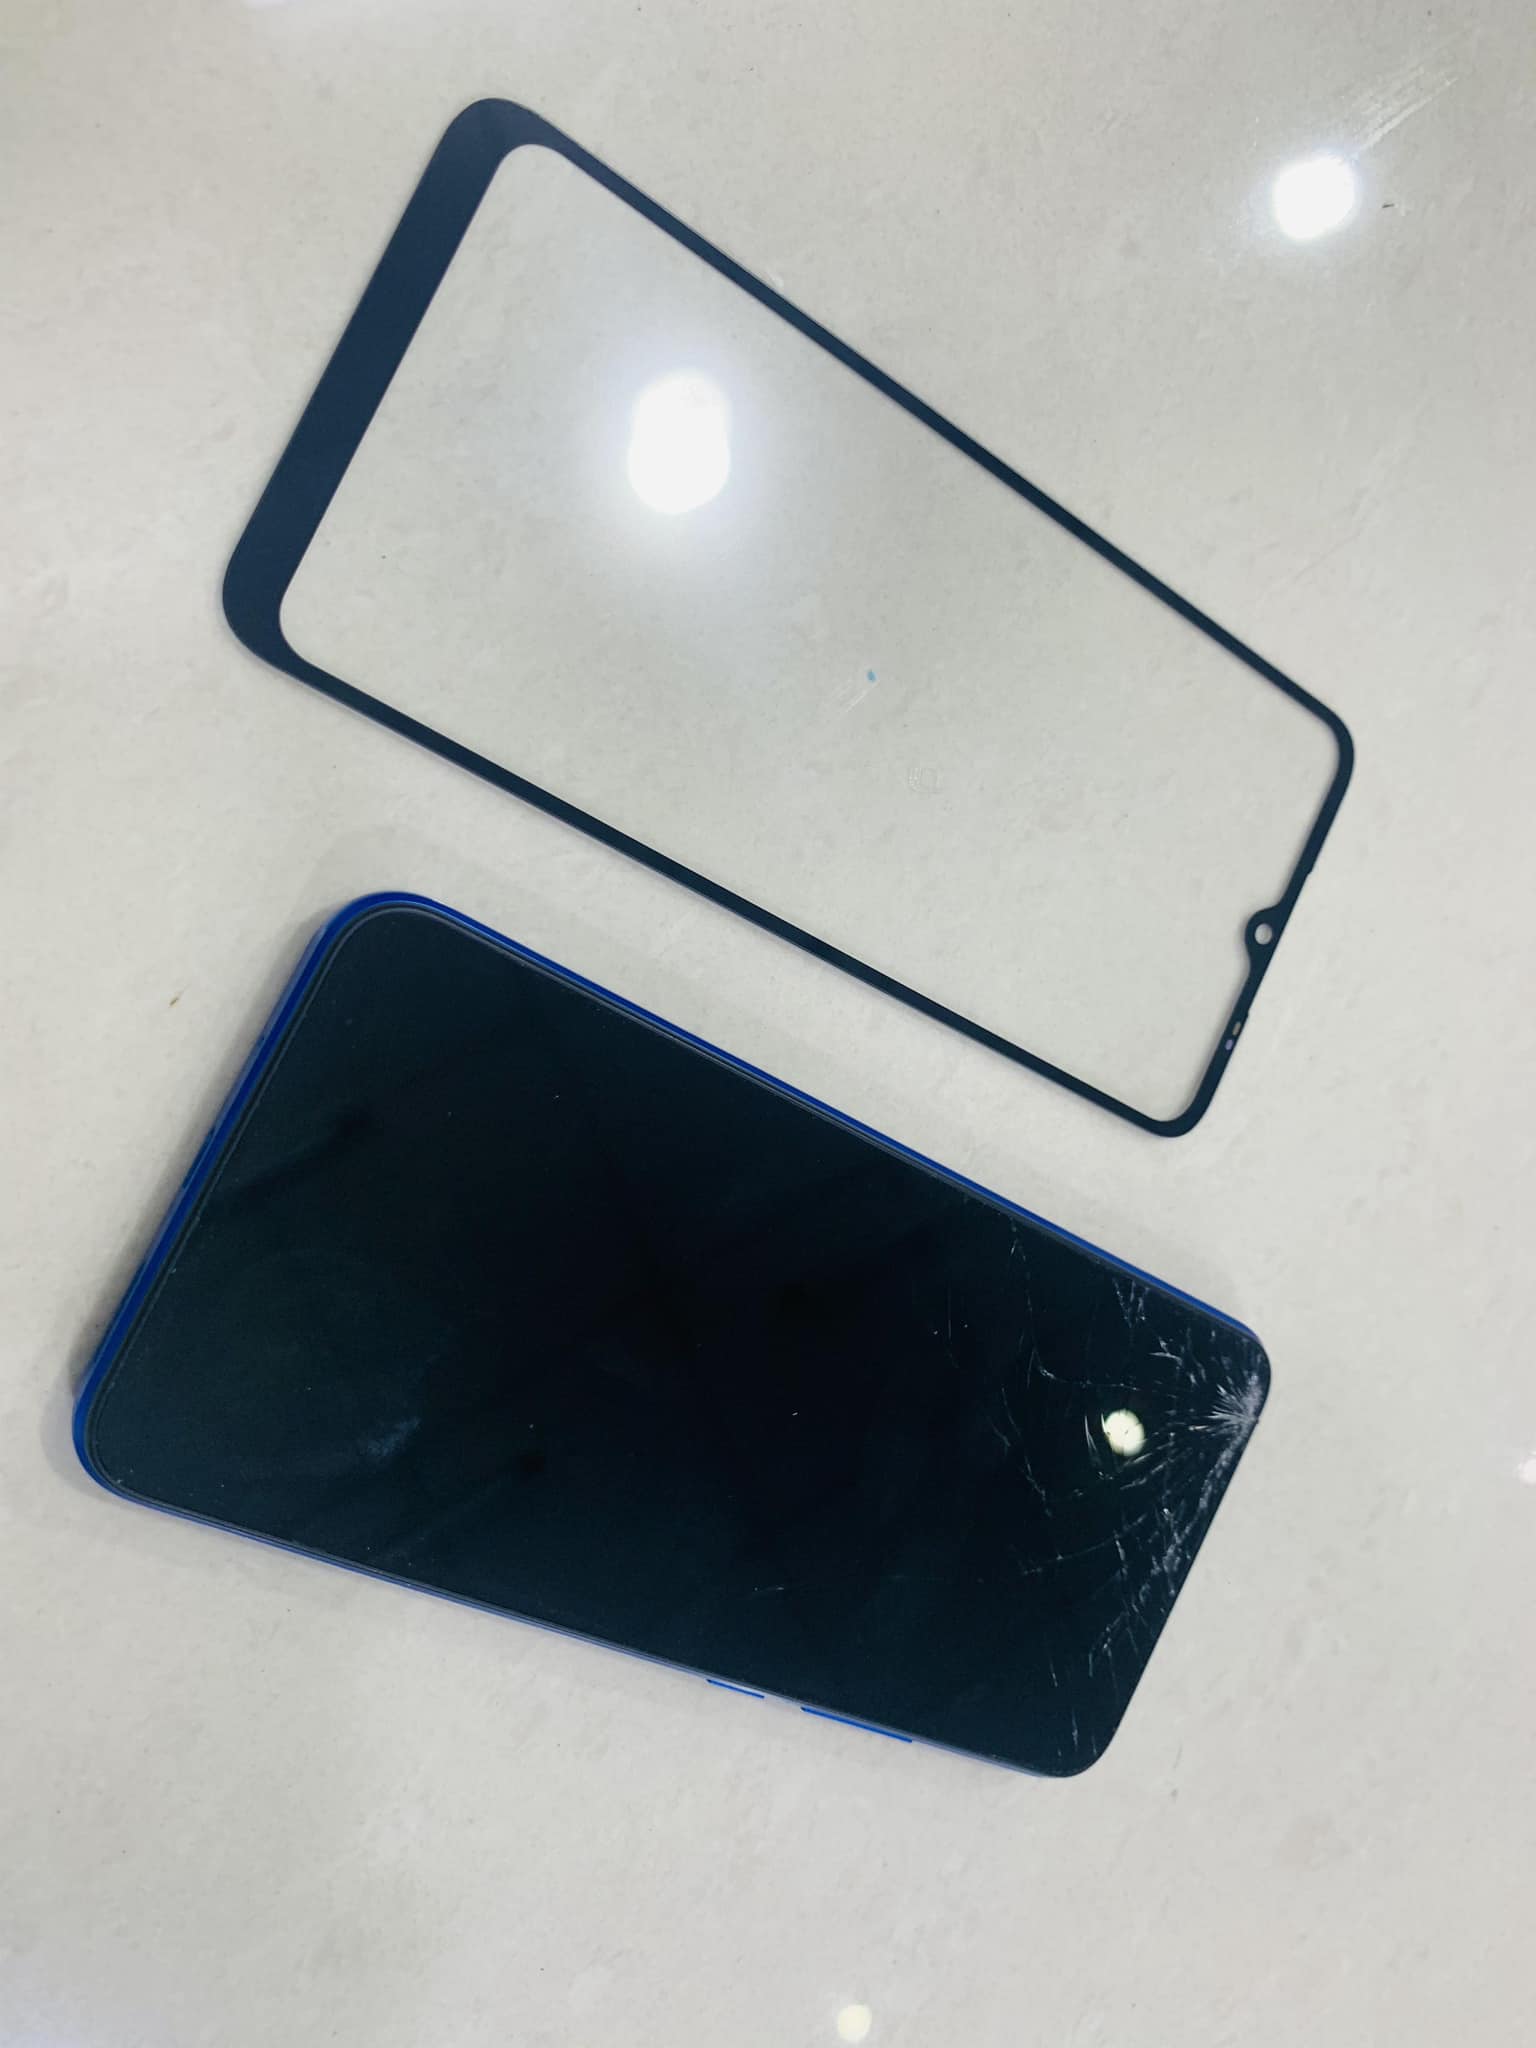 Ép Kính Xiaomi Redmi 9A Chất Lượng Uy Tín Tại Bà Rịa Vũng Tàu